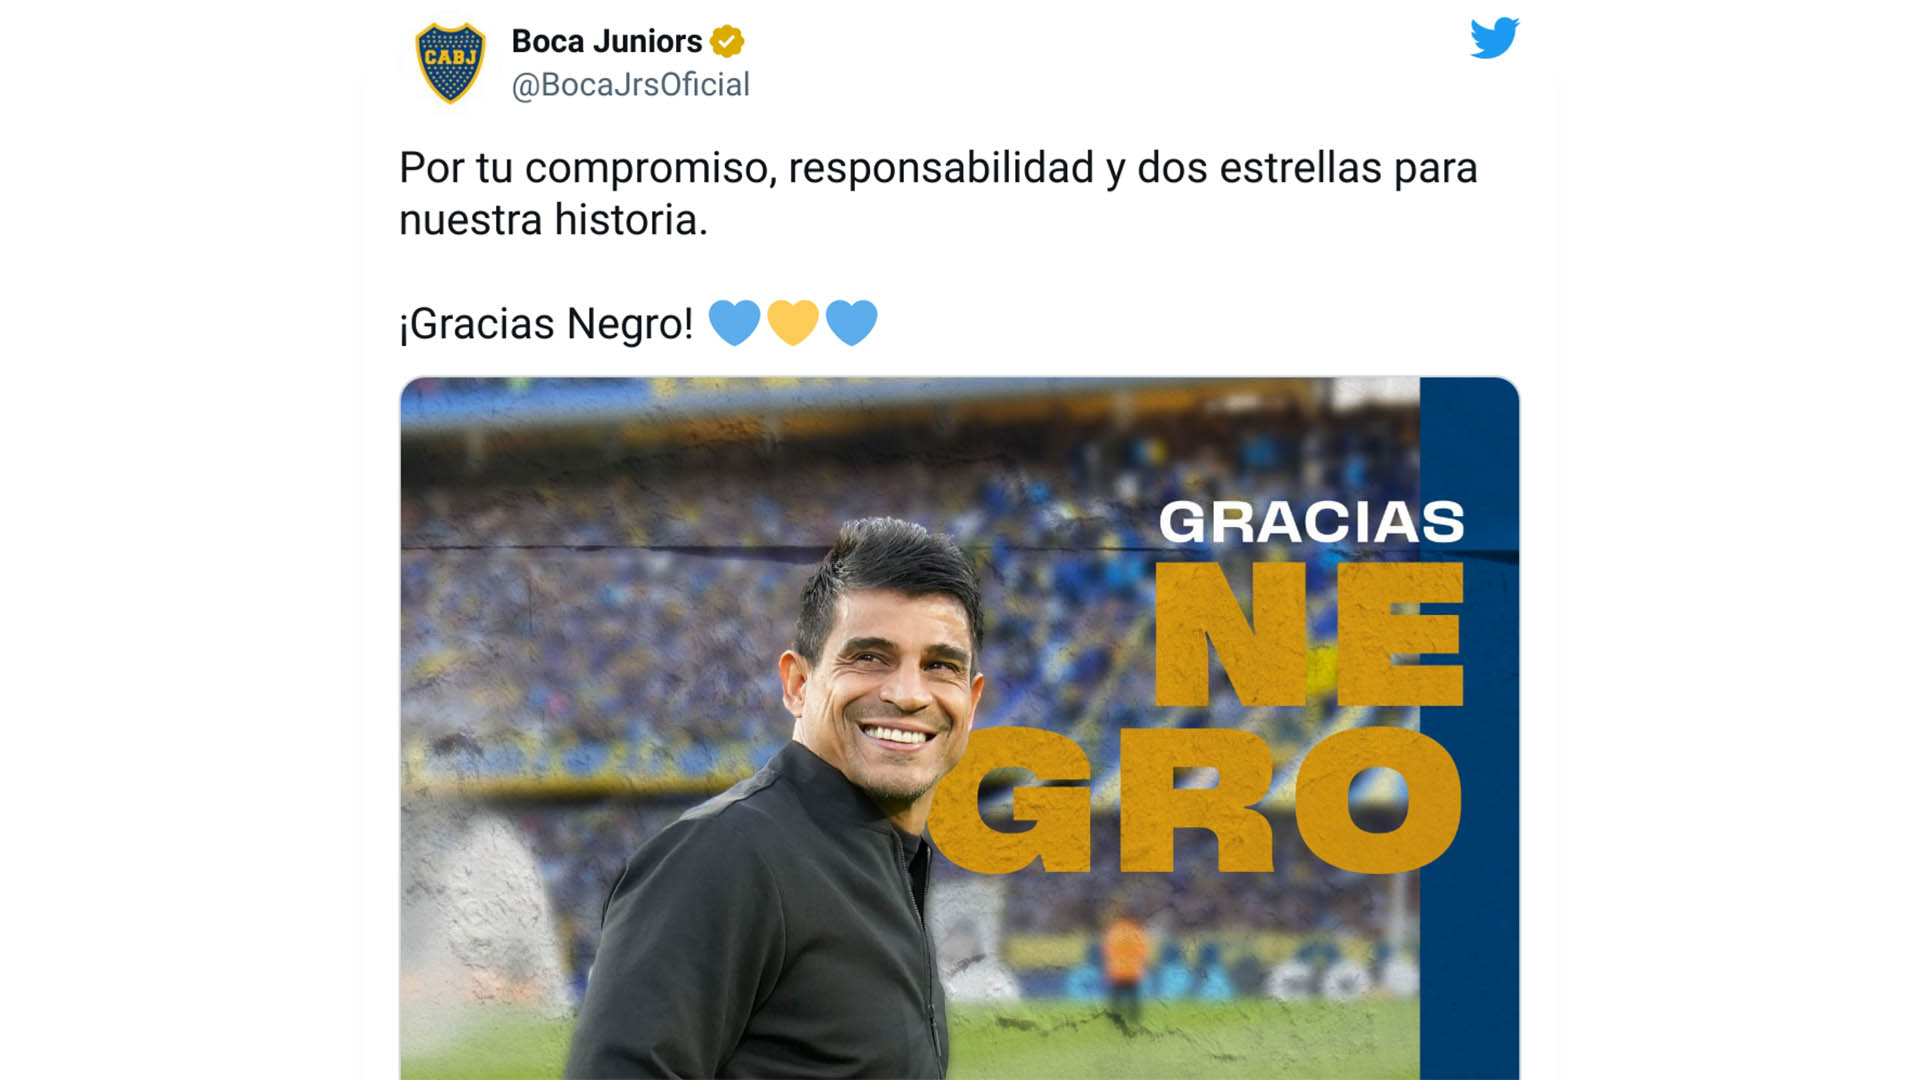 El mensaje de despedida de Boca Juniors a Hugo Ibarra